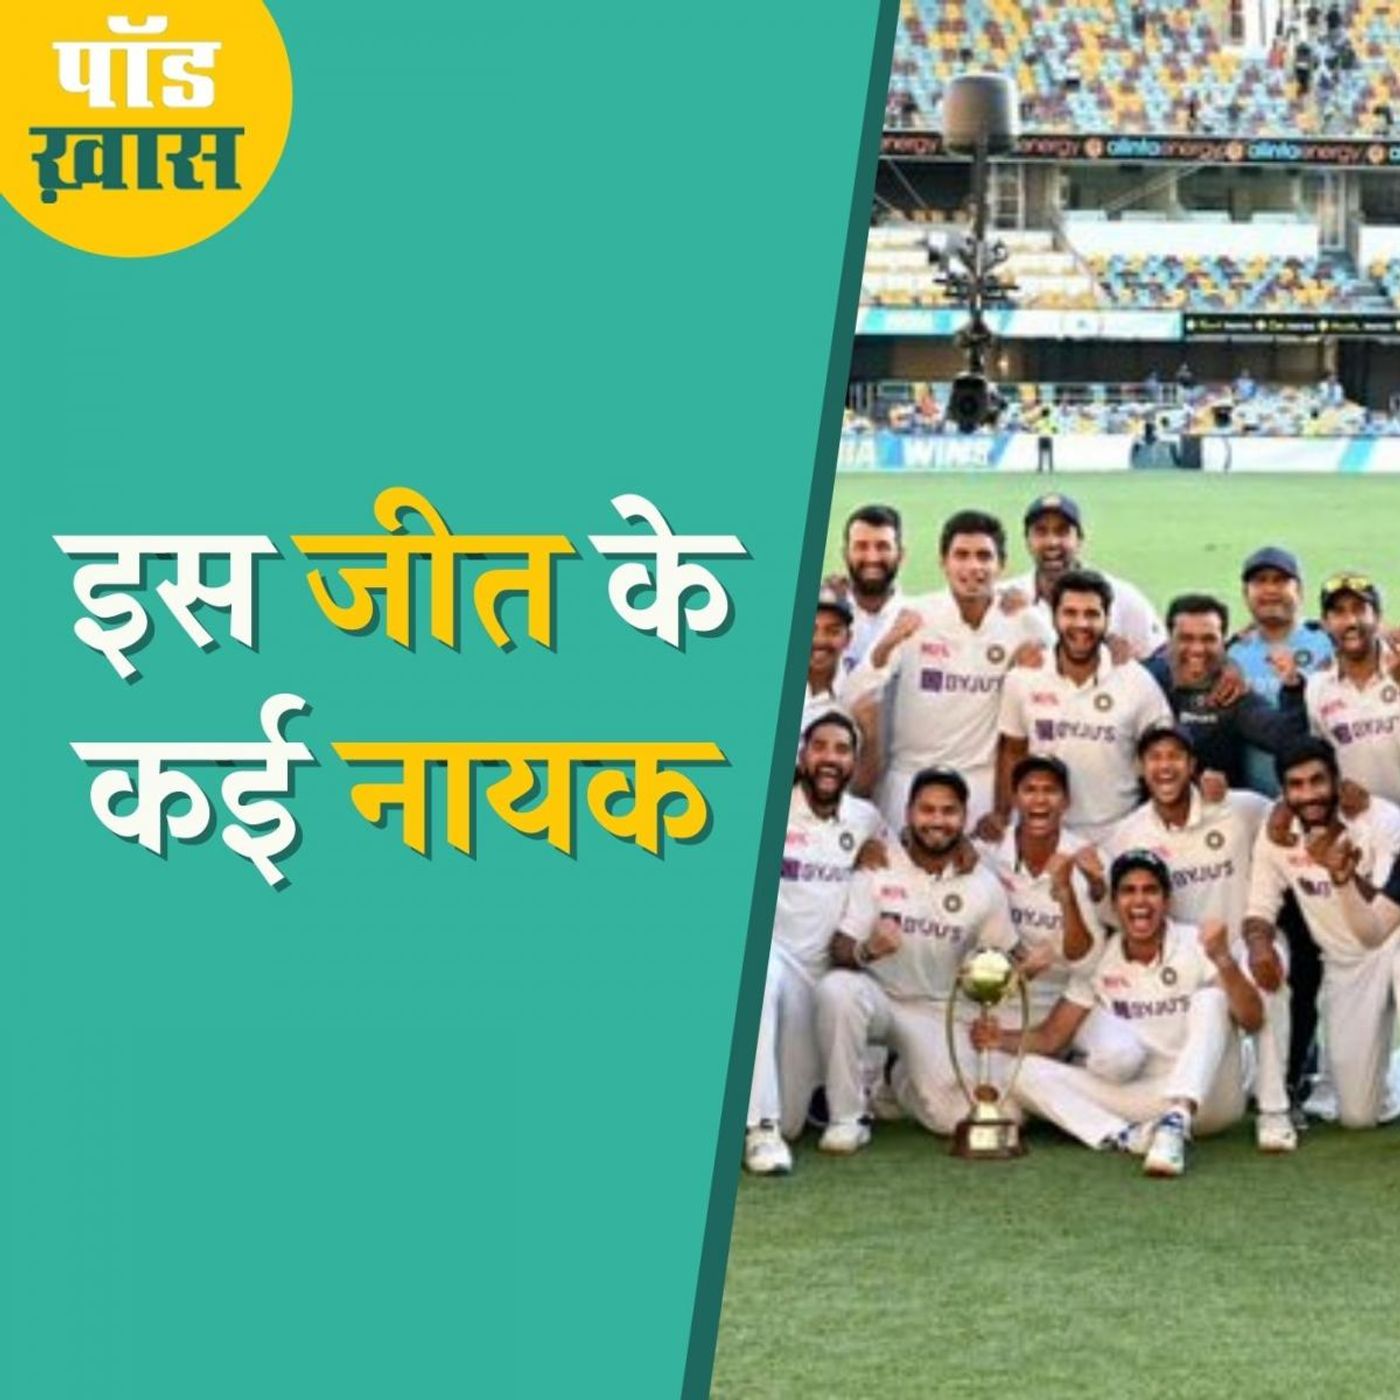 ऑस्ट्रेलिया पर टीम इंडिया की ये जीत स्पेशल क्यों है: पॉड ख़ास, Ep 675